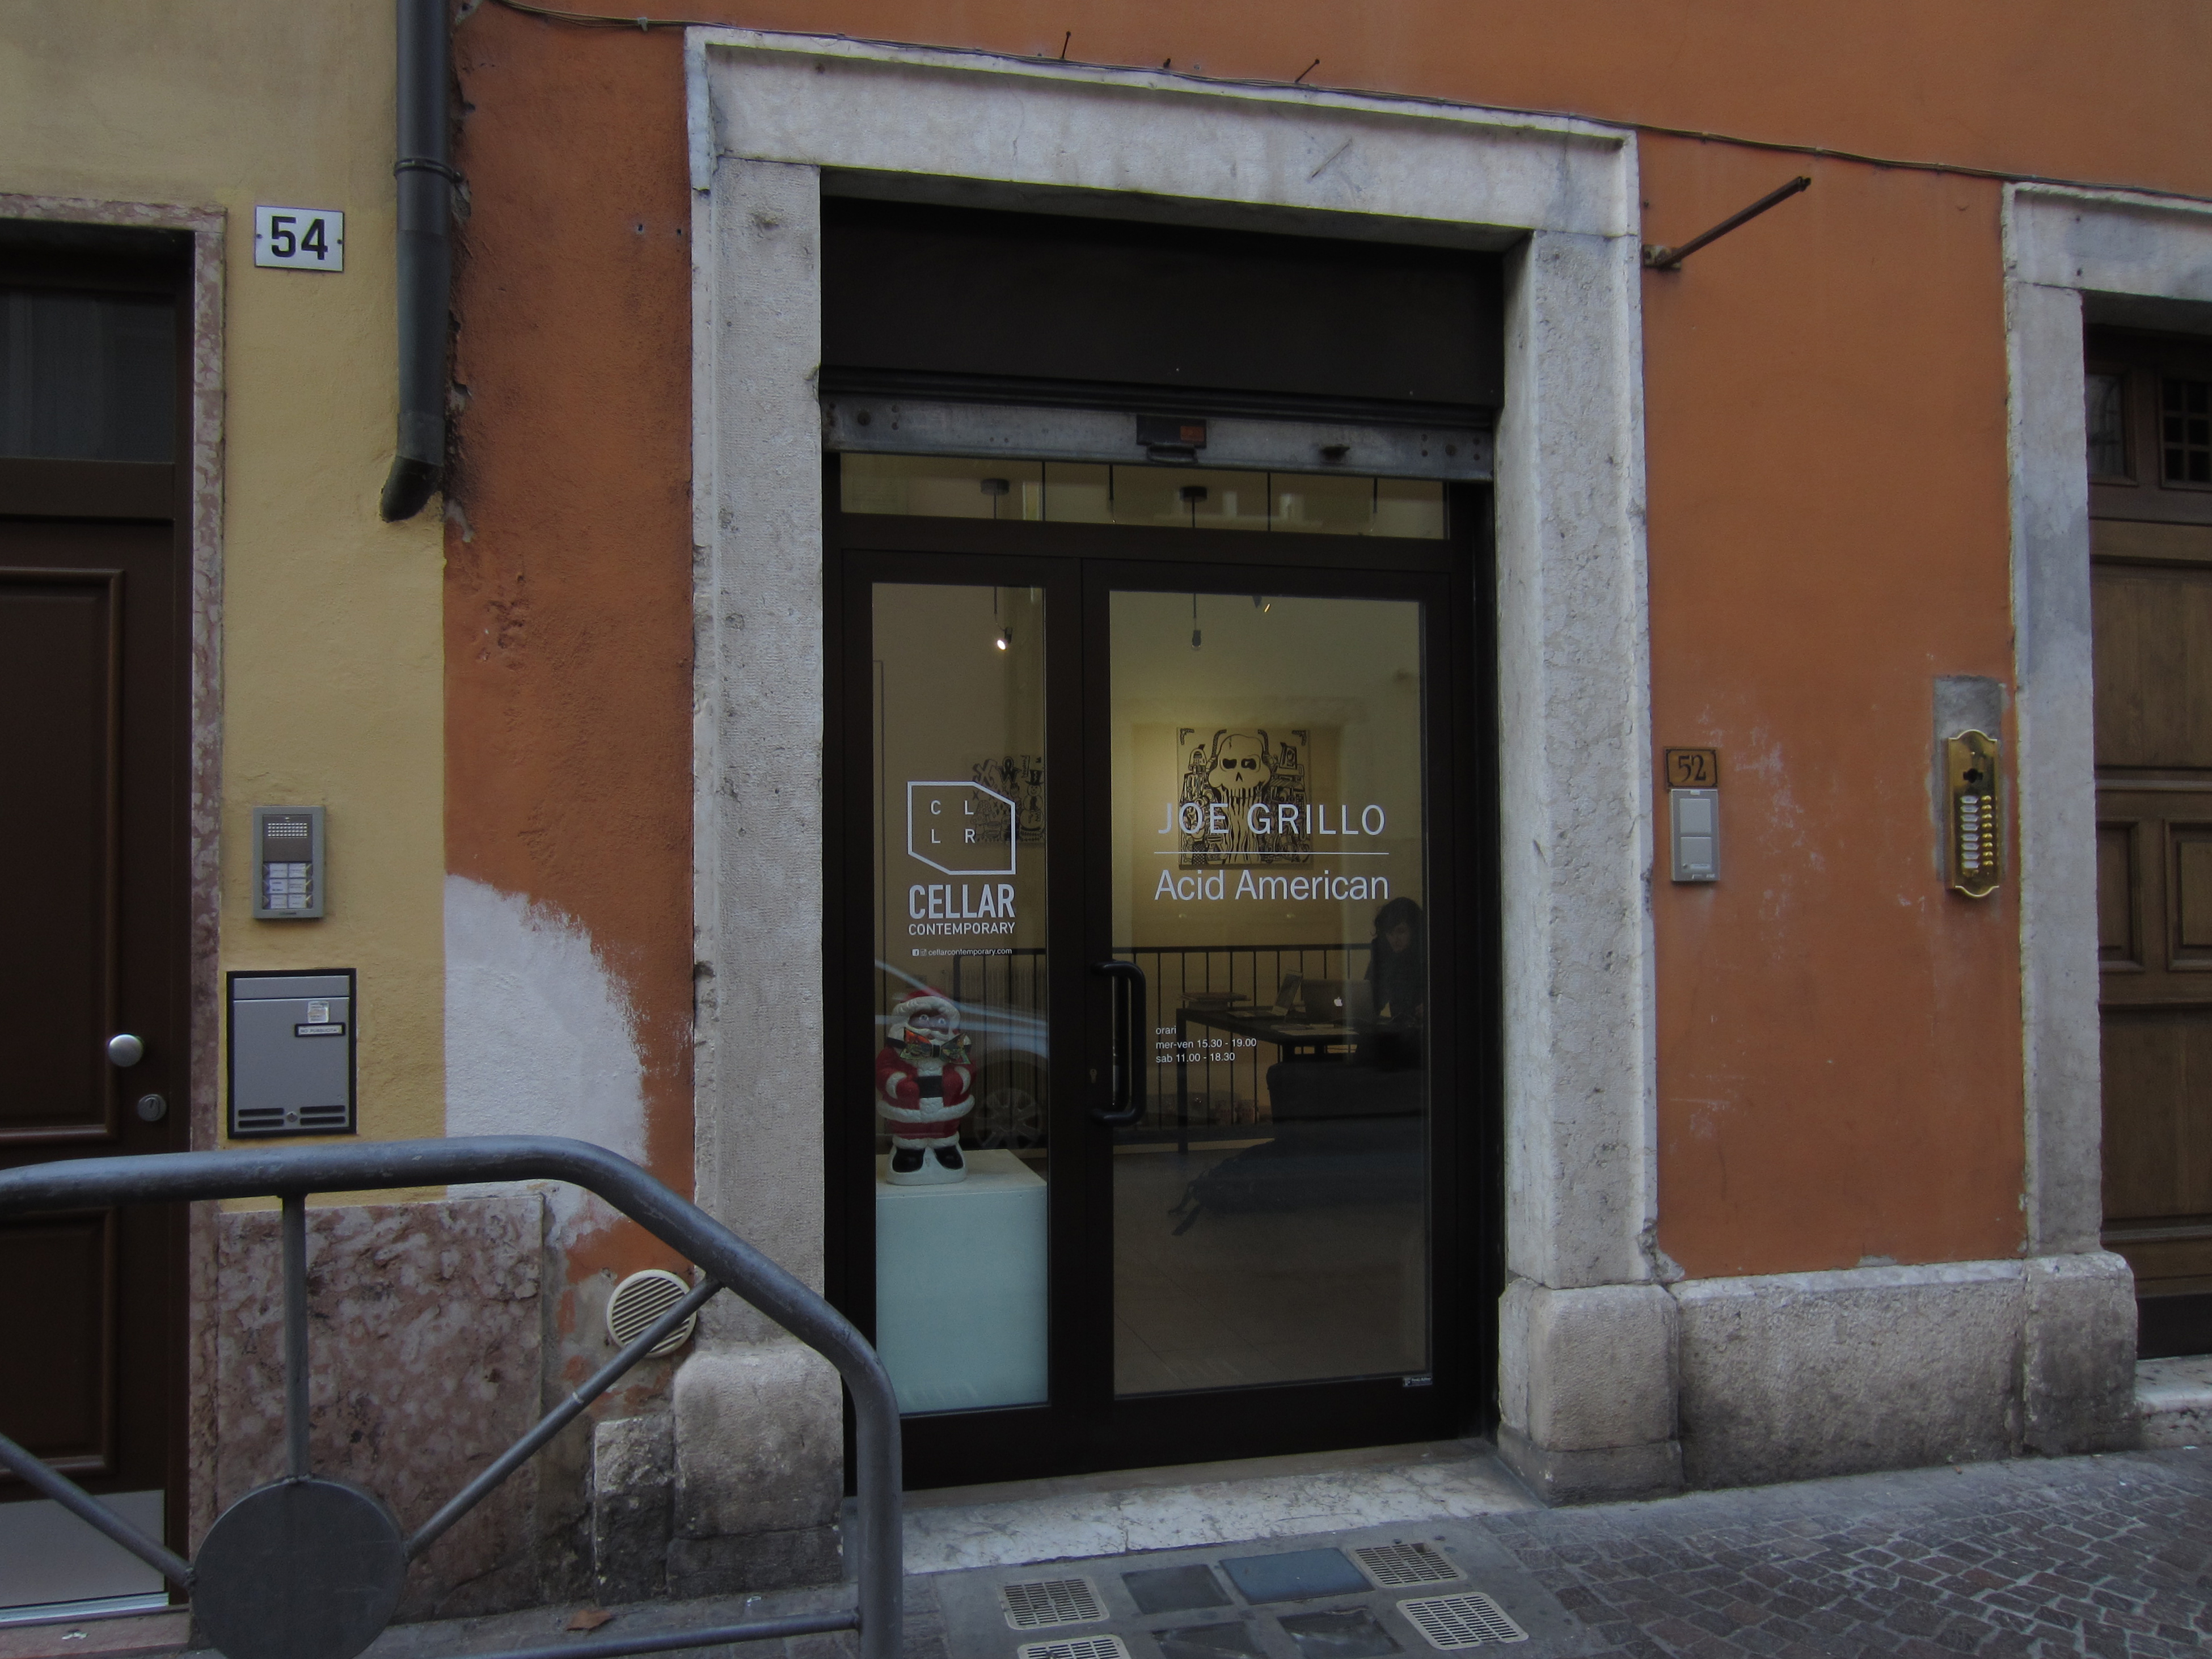 Cellar contemporary, Trento